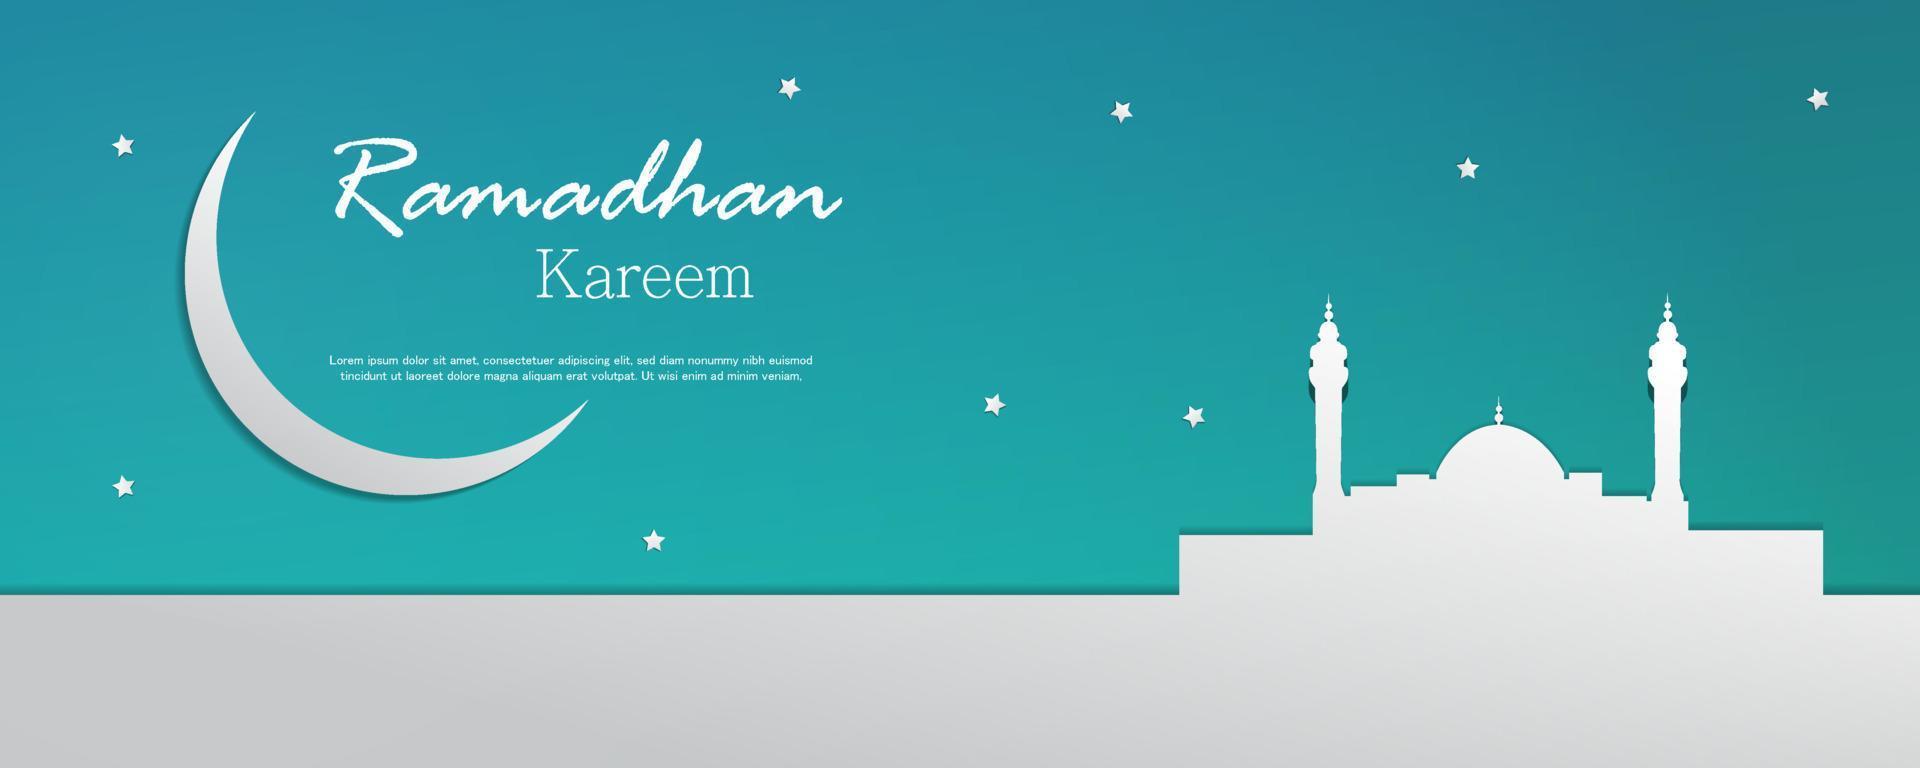 Ramadhan kareem horizontal banner template vector